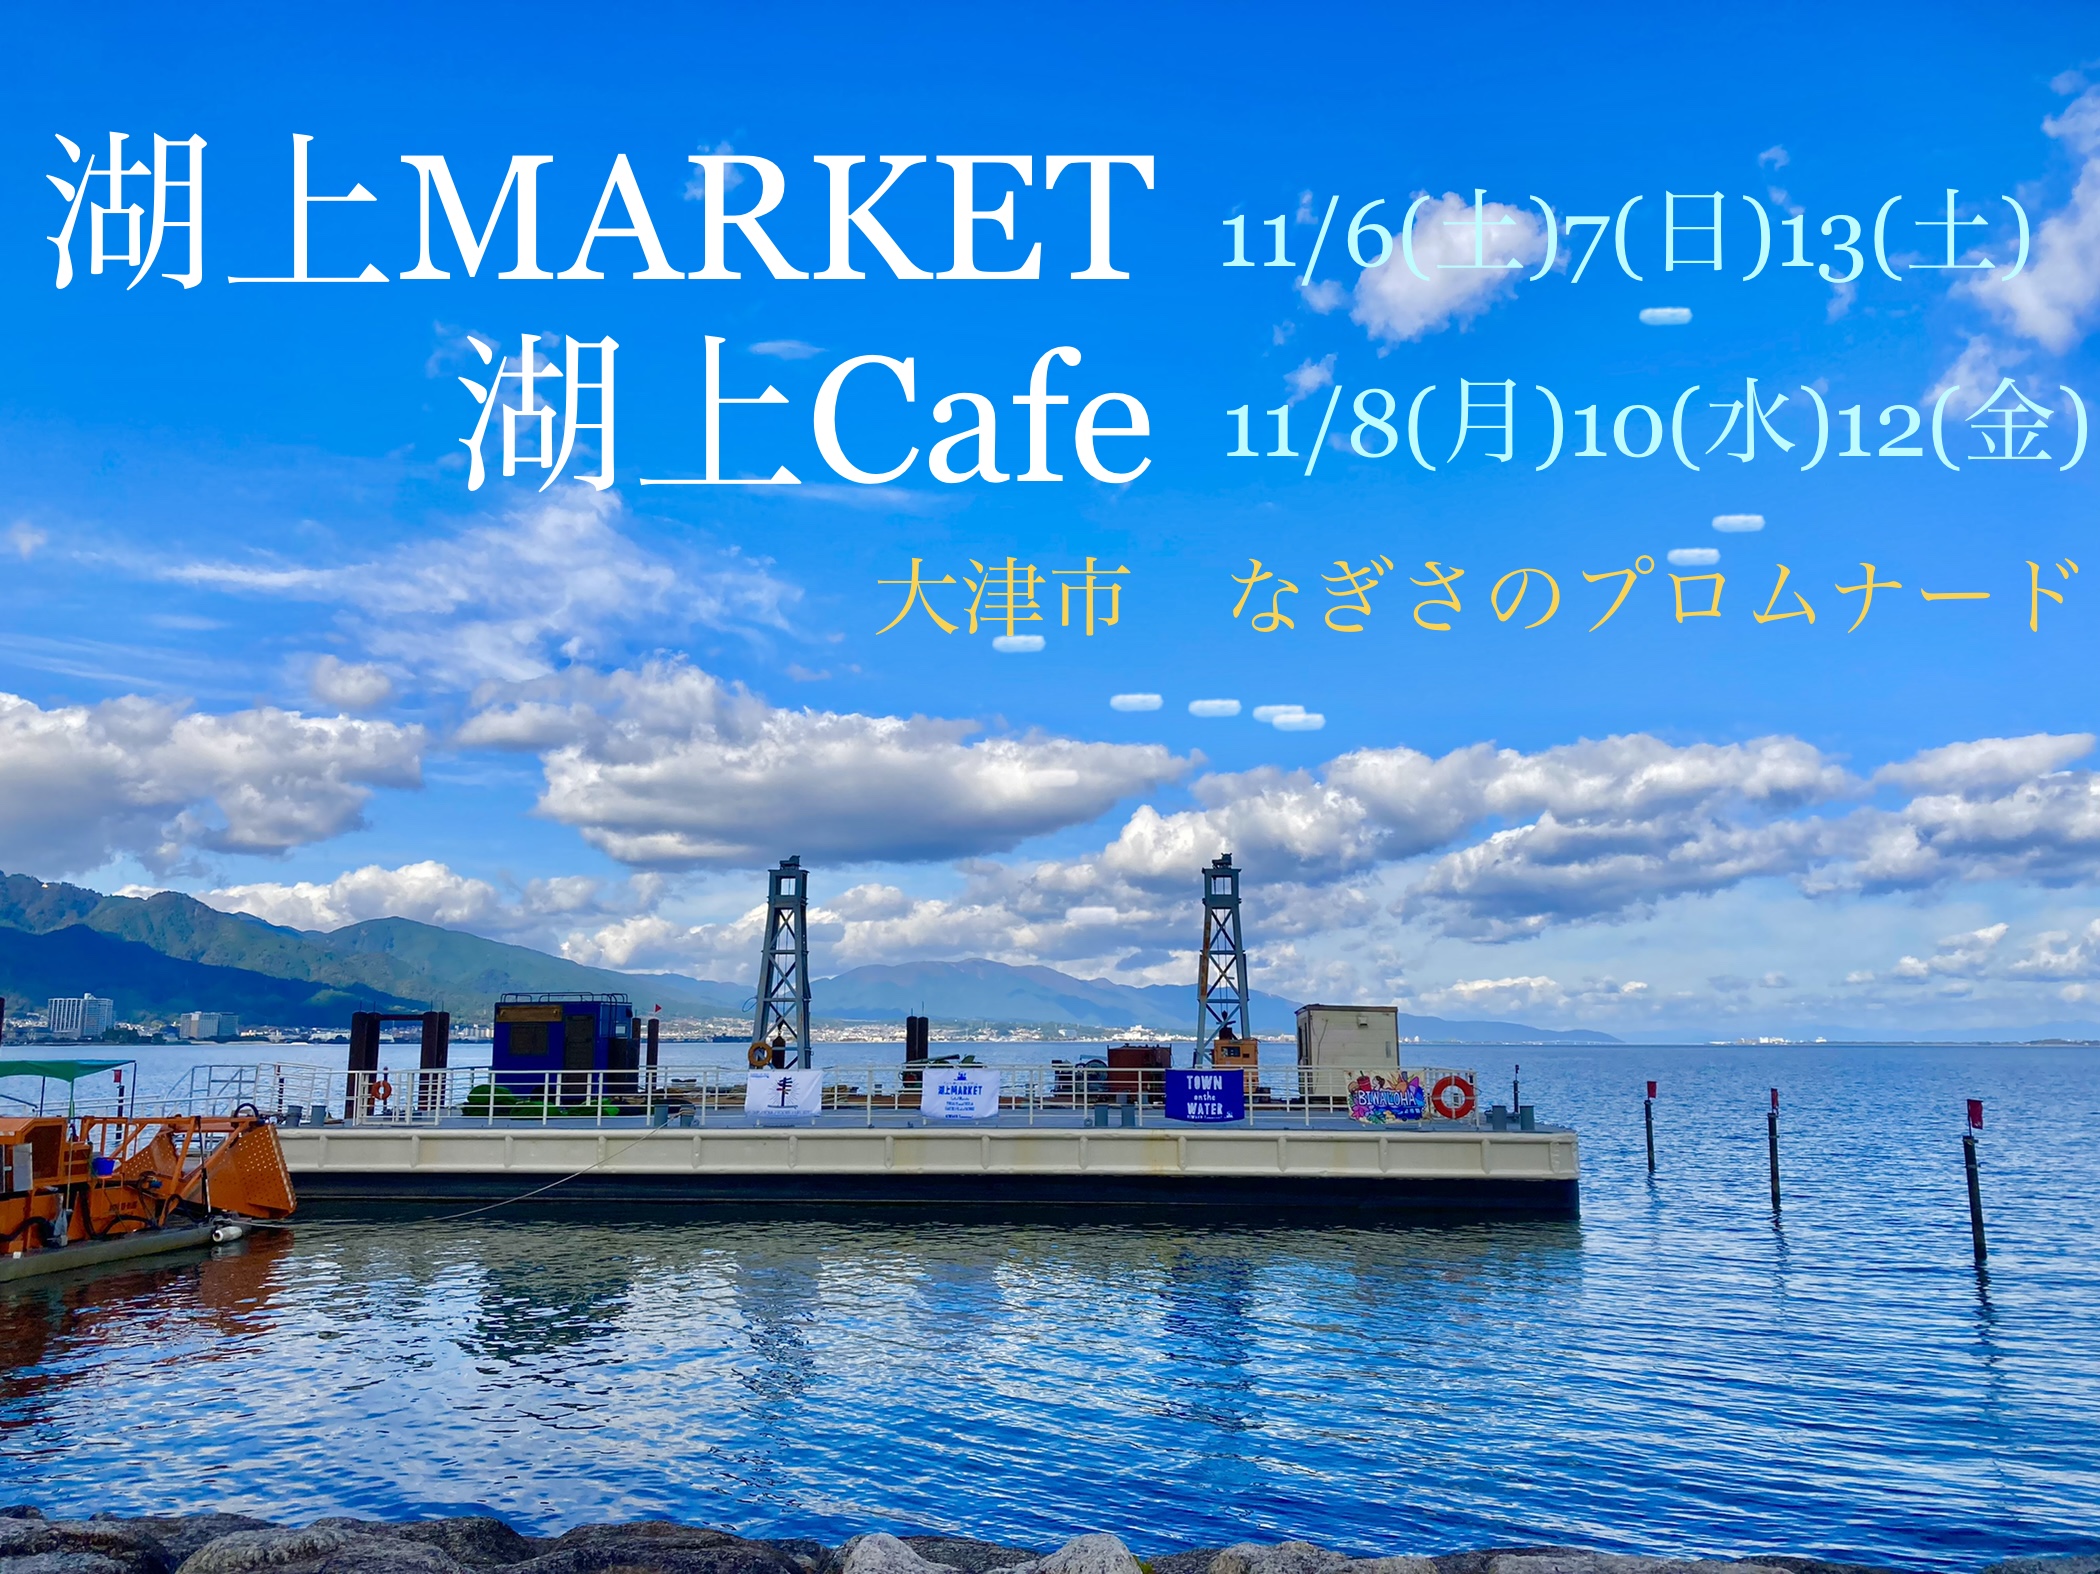 「湖上MARKET」「湖上Cafe」琵琶湖の上でカフェやマルシェ、湖岸でイベントを楽しもう♪【大津市】